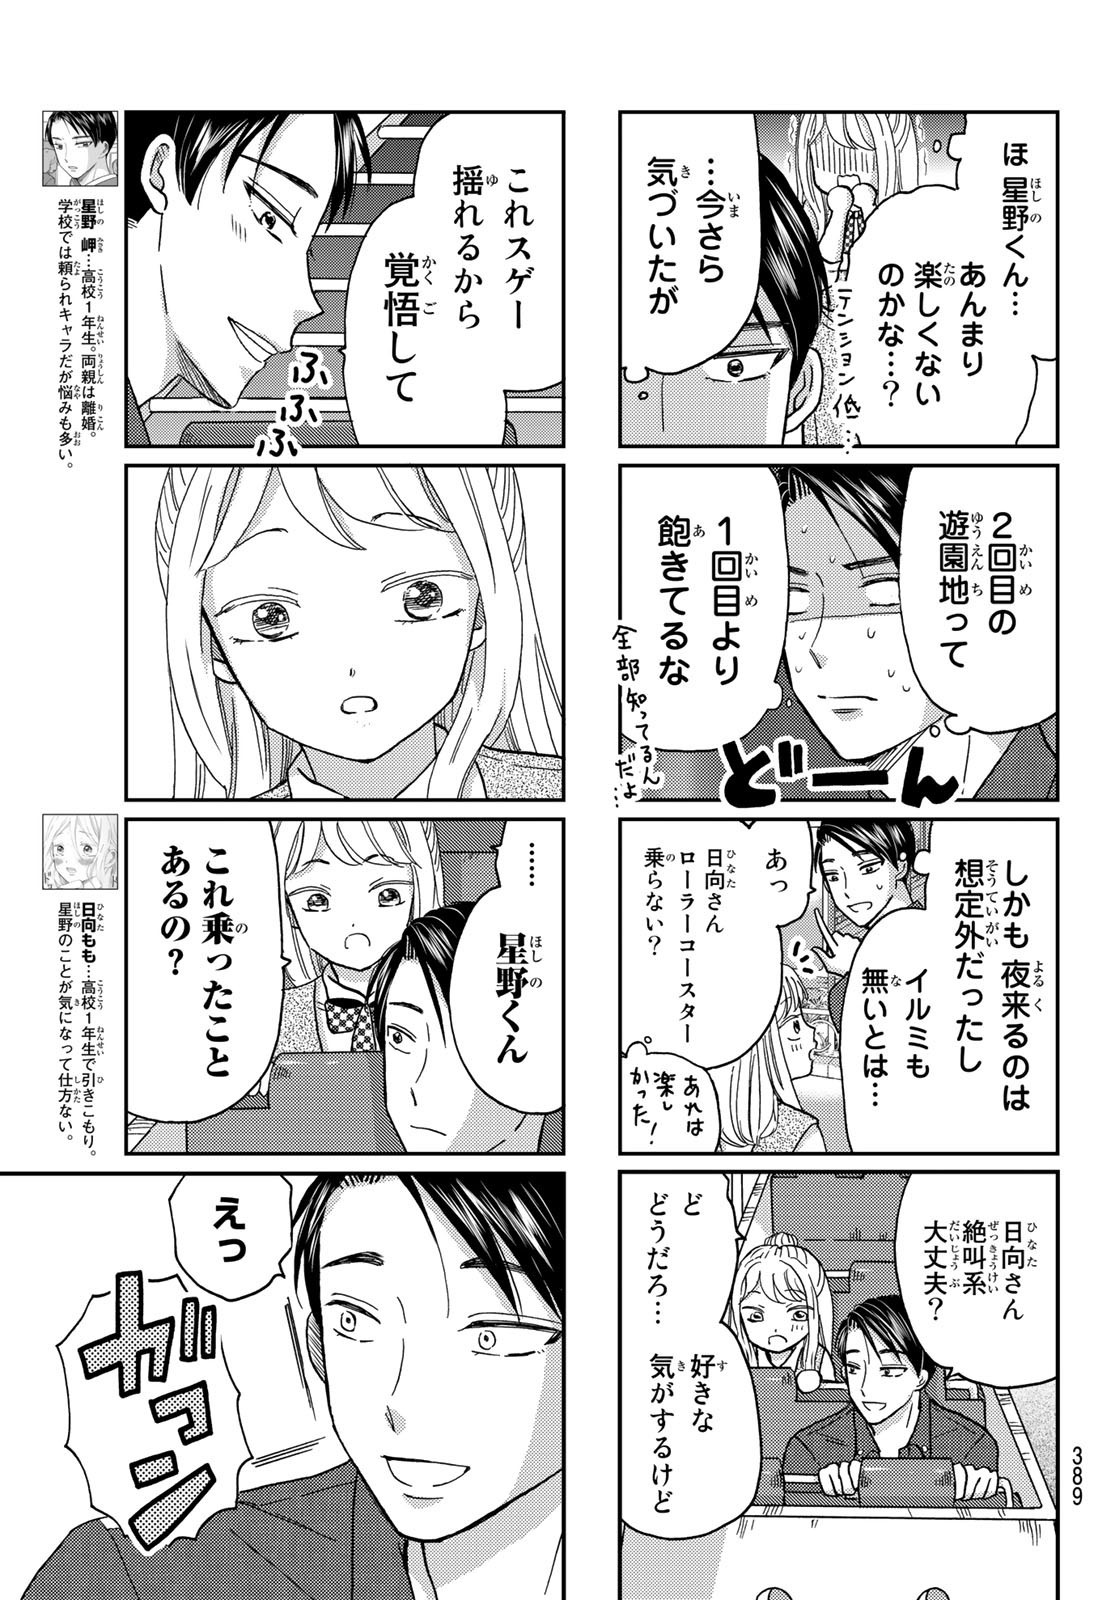 Hinata-san, Hoshino desu. - Chapter 033 - Page 3